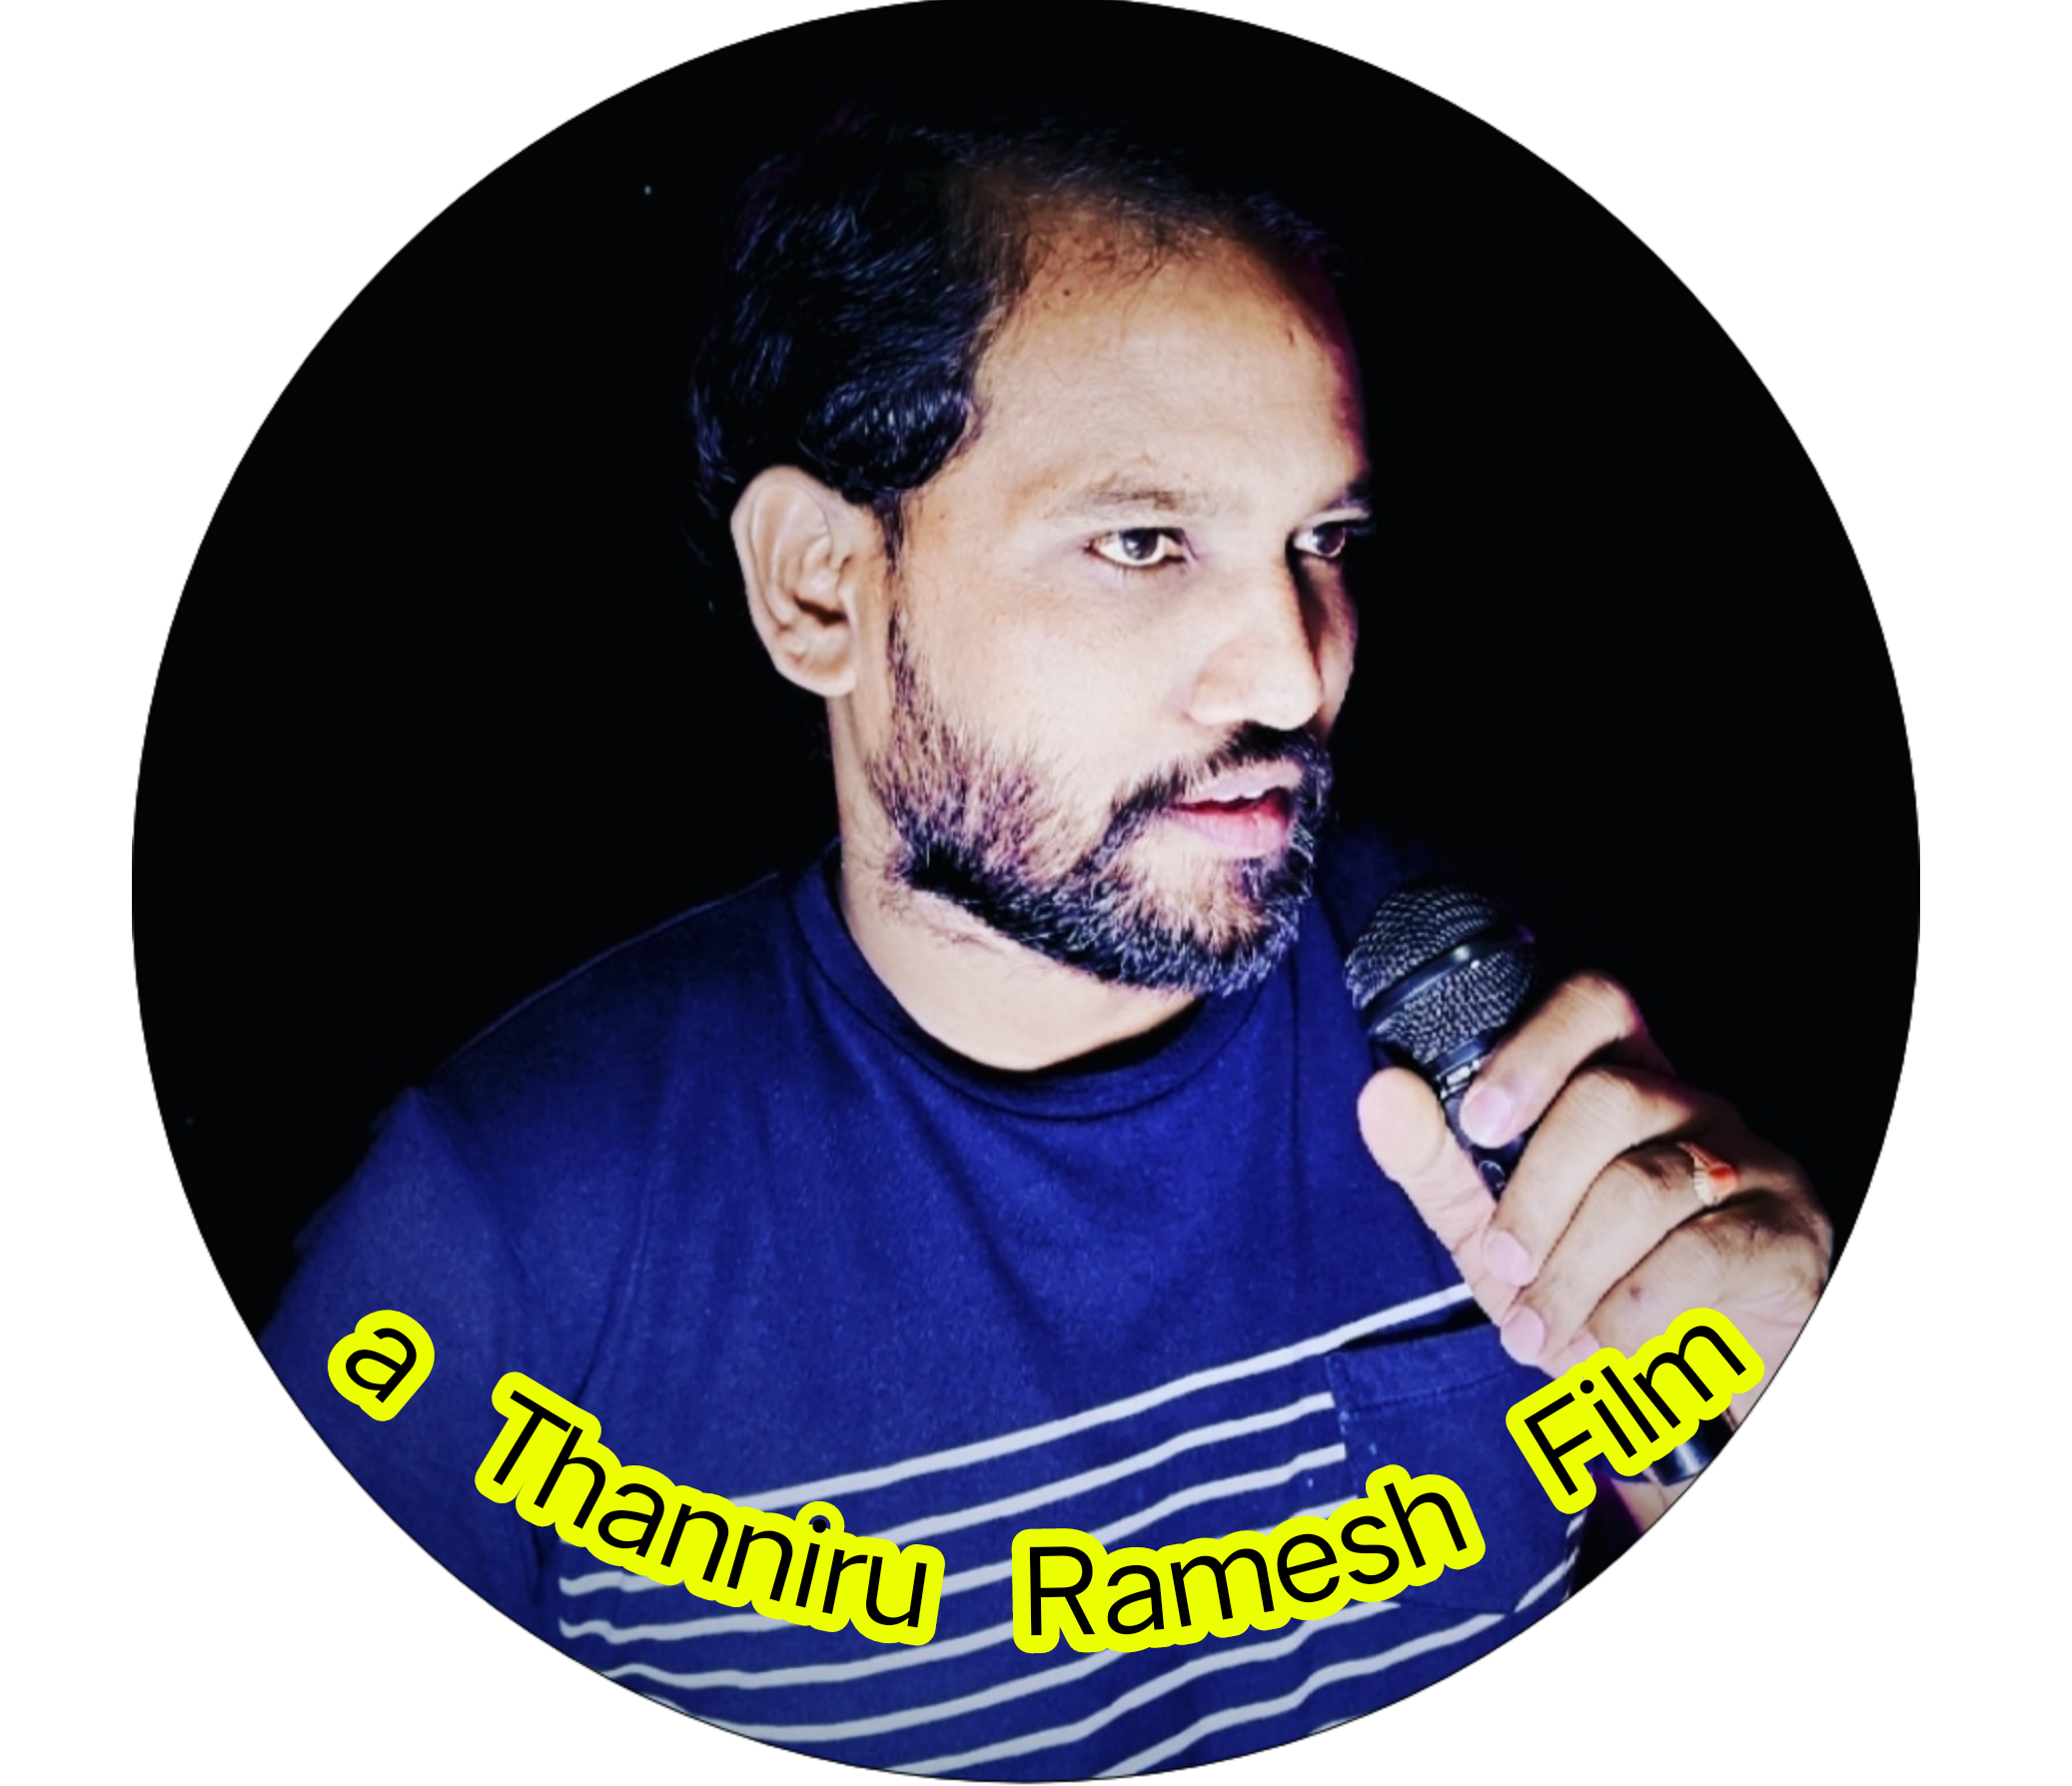 Thanniru Ramesh